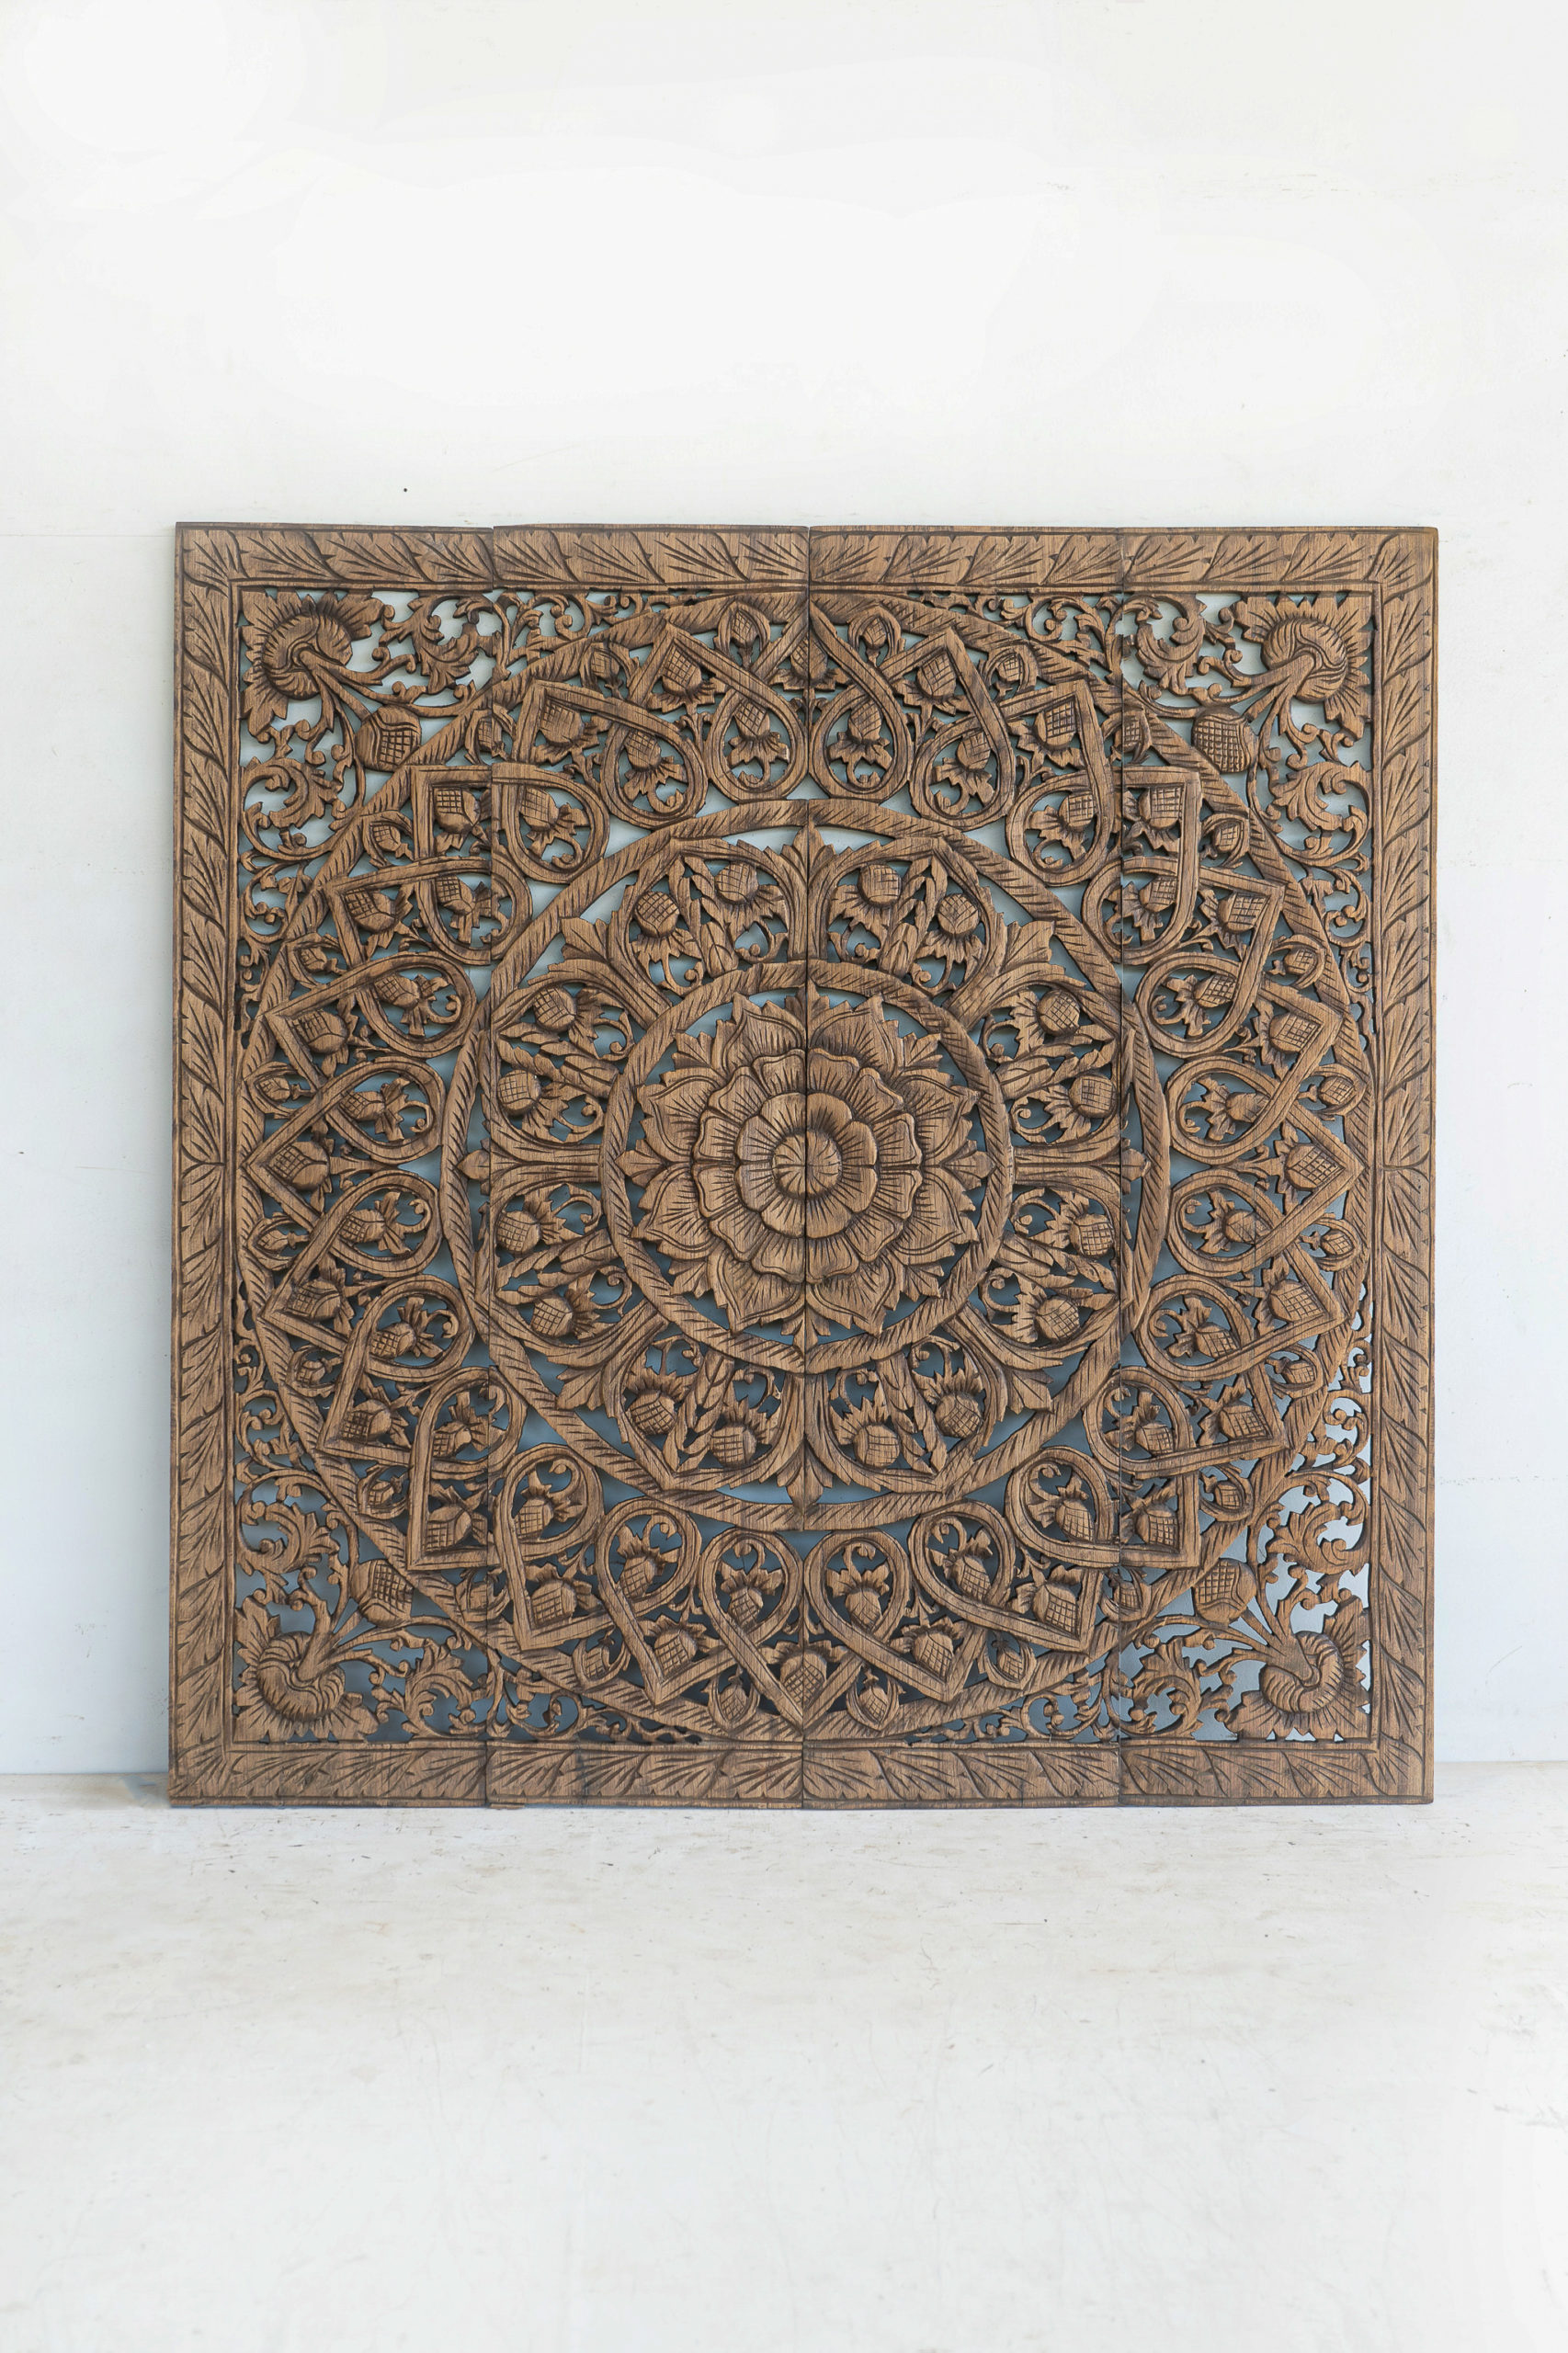 Mandala Wood Carving Wall Art Paneling - Siam Sawadee